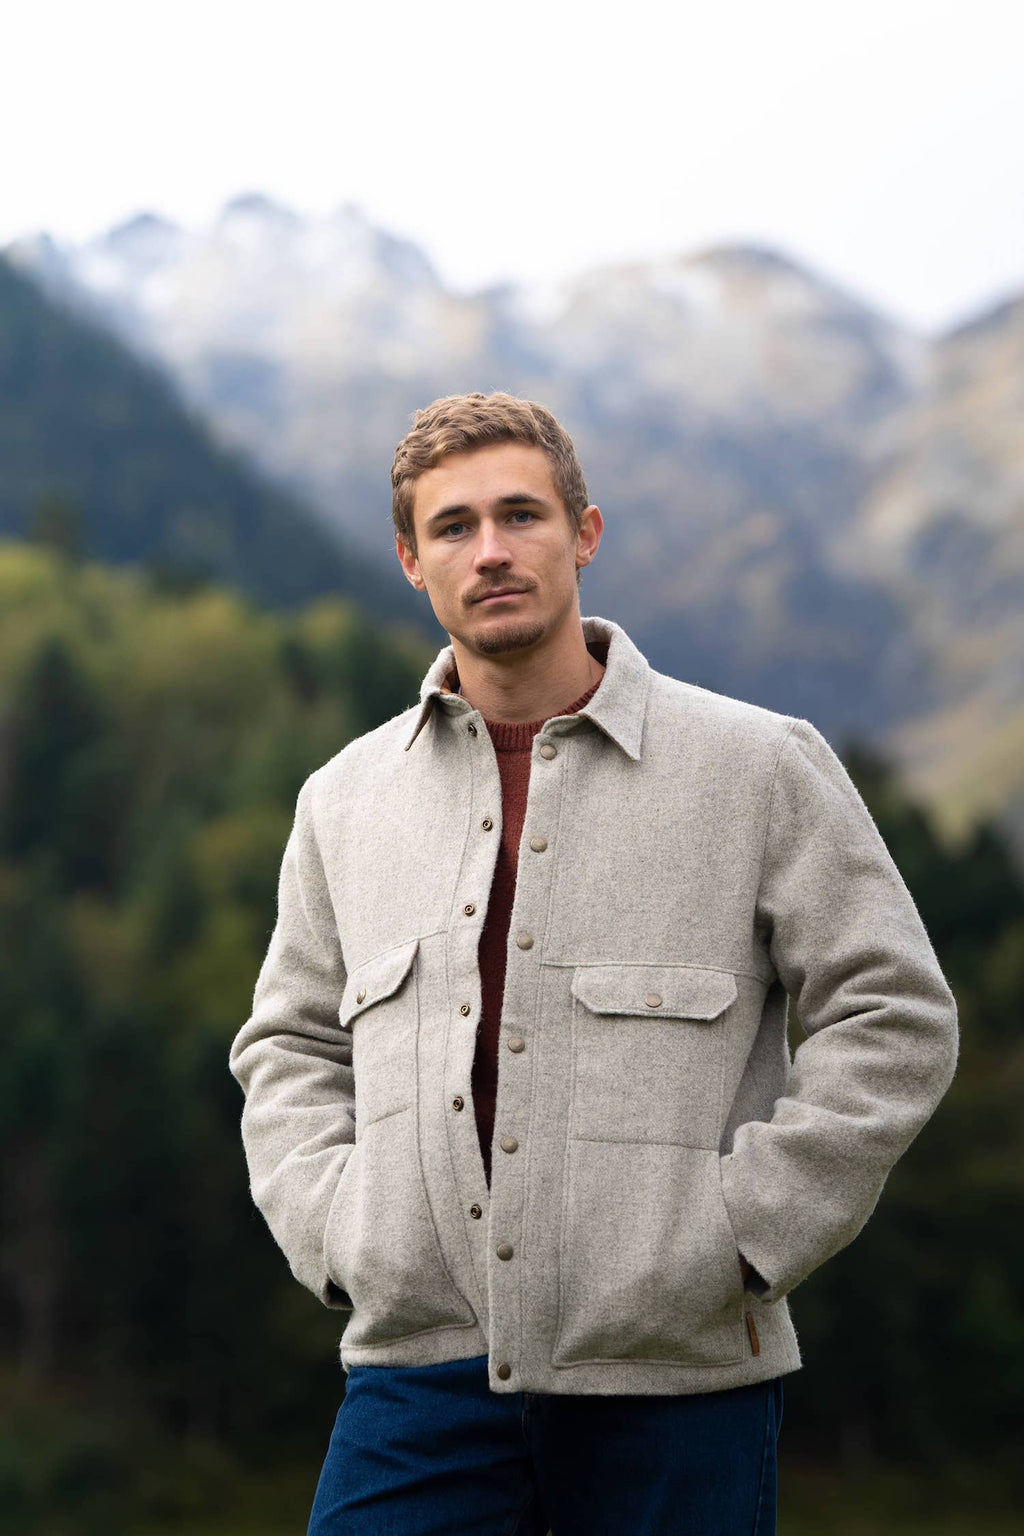 Manteau veste homme éthique et responsable ♻️, gris clair, en 100% laine des Pyrénées et doubure coton, déperlant, made in France 🇫🇷, maison izard.